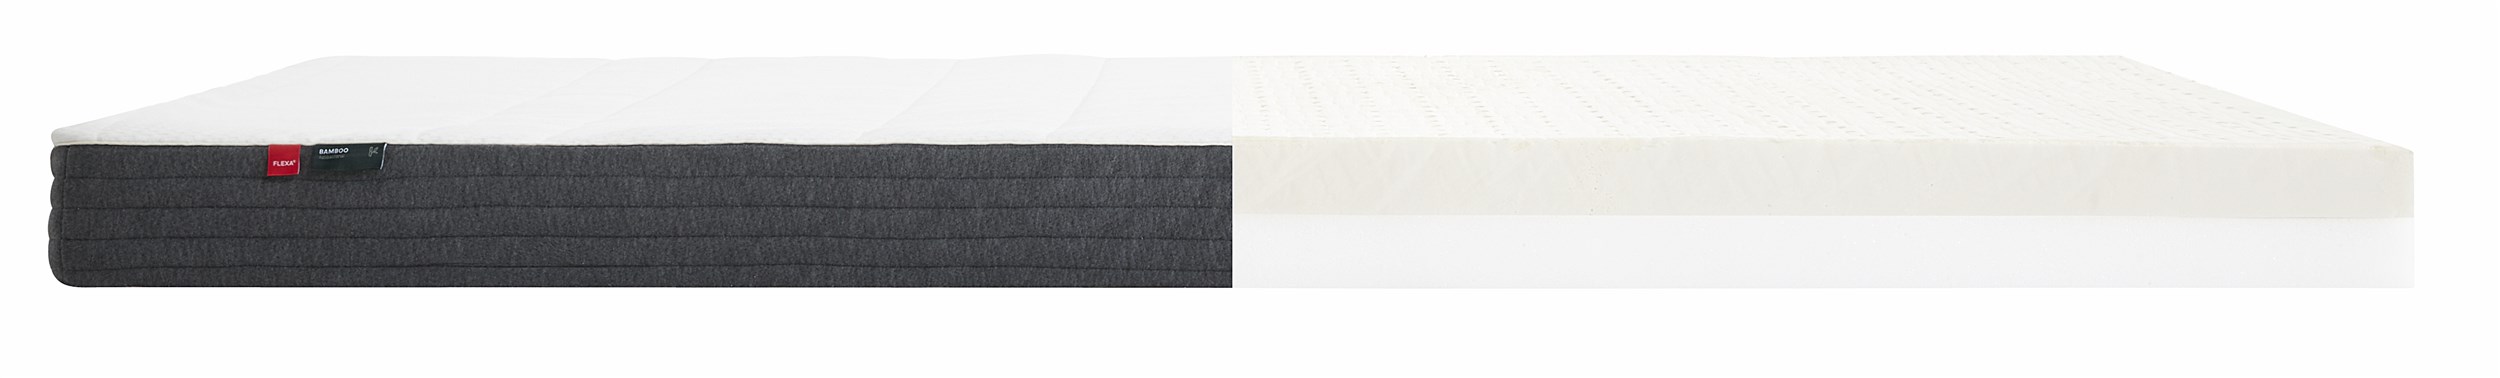 Flexa Sleep Madrass 90 x 200 x 12 cm - Klädsel med bambufibrer och latex 6 cm/skum 6 cm